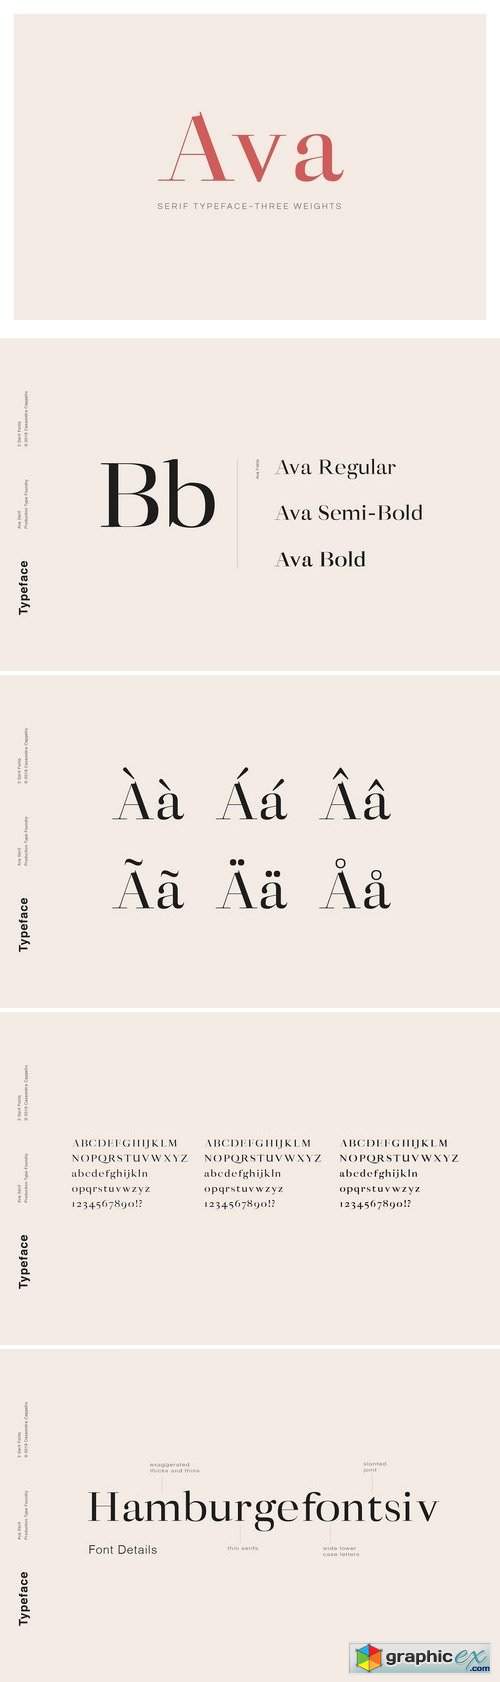 Ava - A Classy Serif Typeface